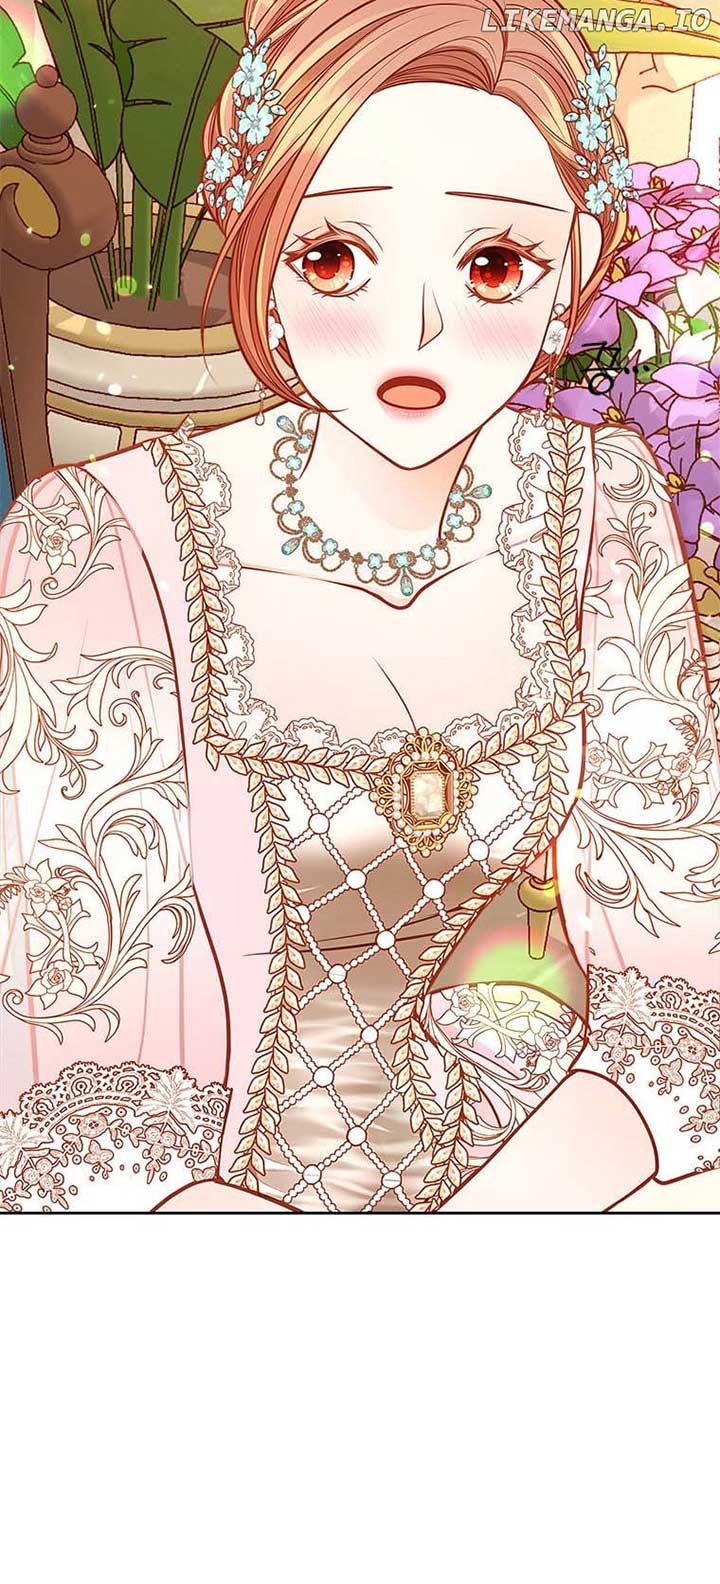 The Duchess’s Secret Dressing Room chapter 70